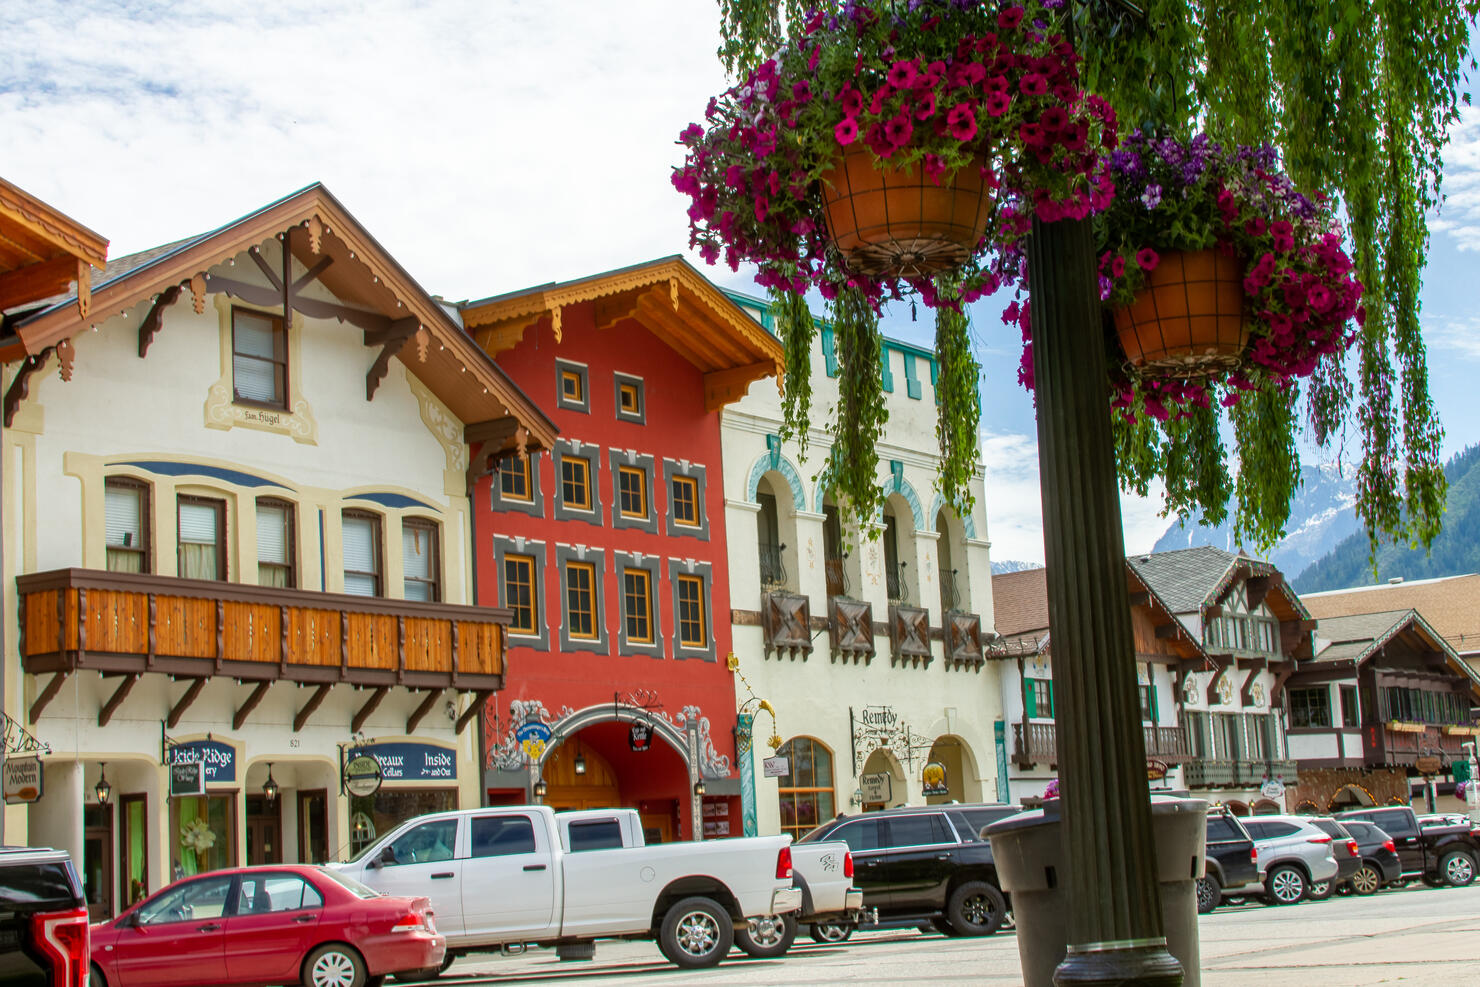 Main Street in Leavenworth, WA